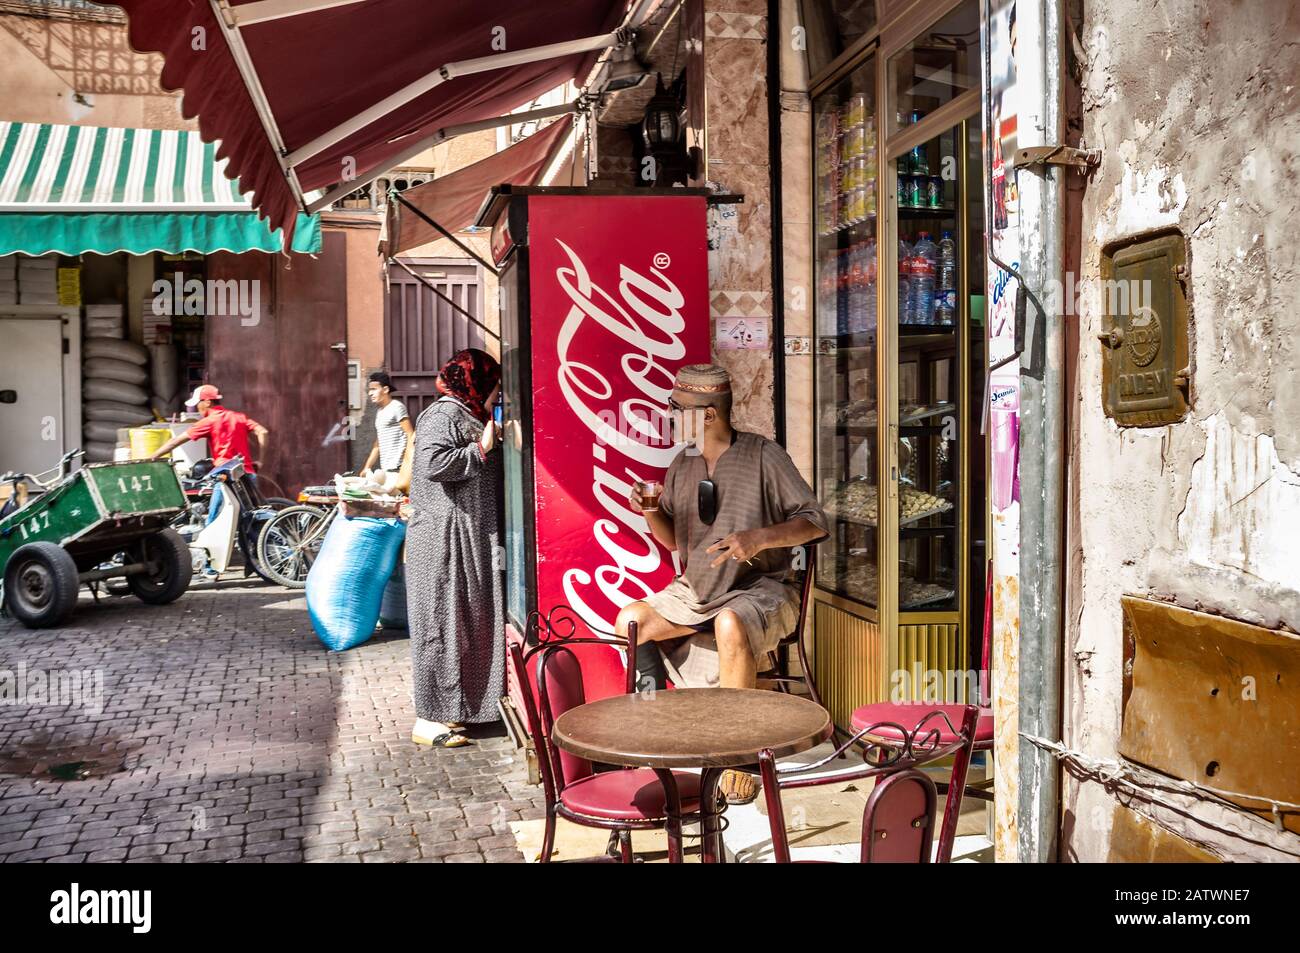 Marrakech, Maroc . 9 Octobre 2015. Le vieil homme est assis dans des vêtements marocains traditionnels à l'extérieur d'un café buvant du thé à la menthe à côté d'une machin moderne de coca cola Banque D'Images